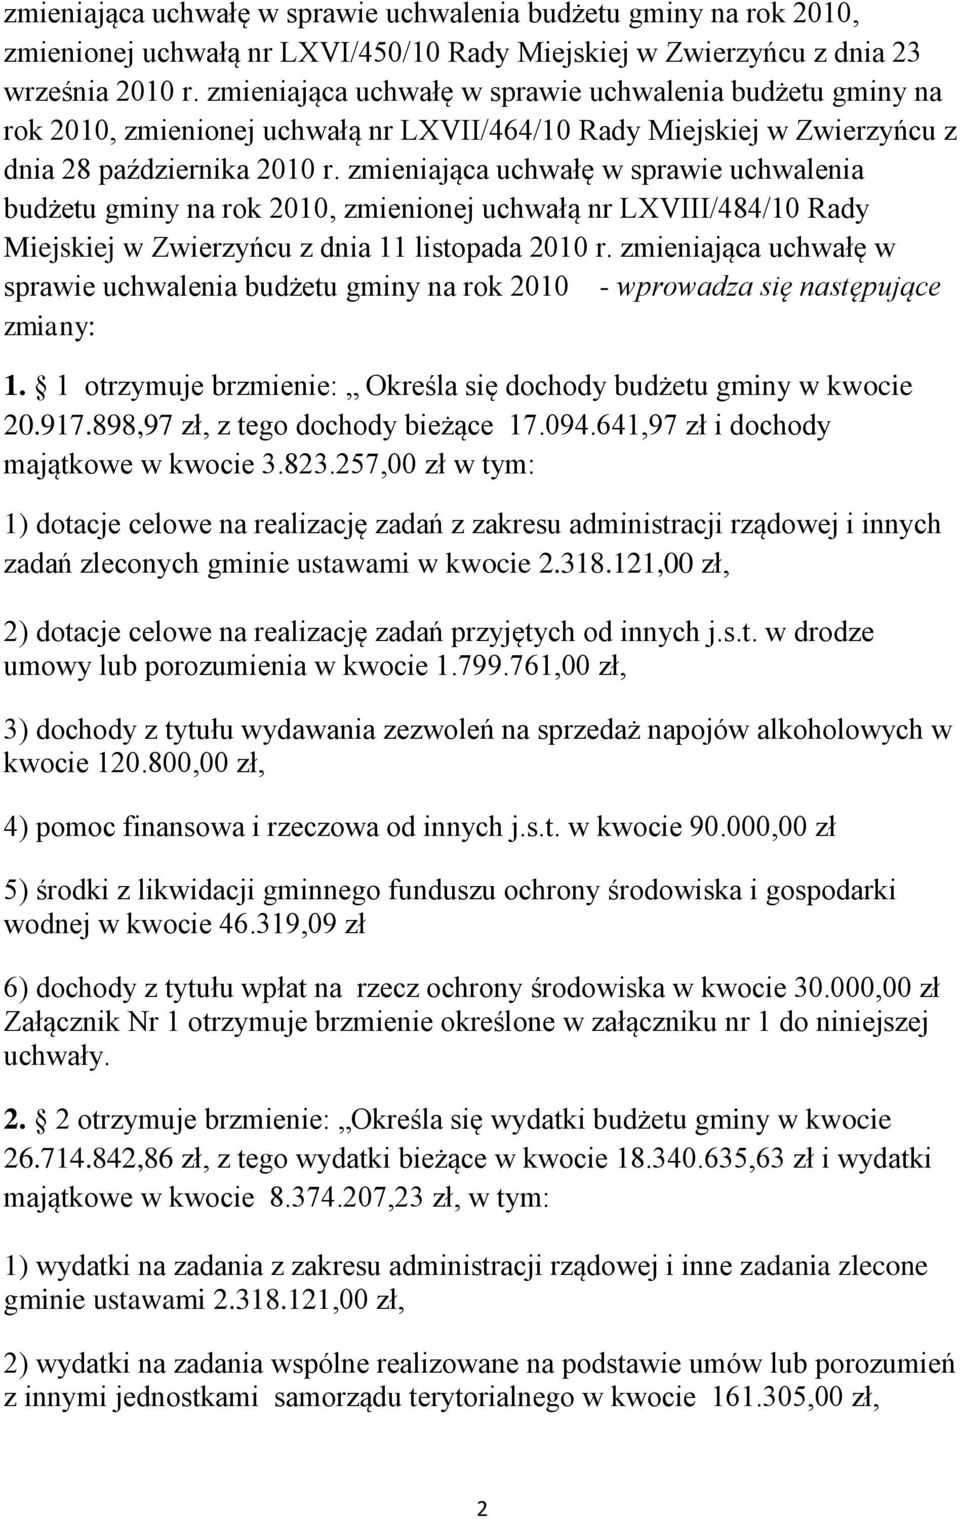 zmieniająca uchwałę w sprawie uchwalenia budżetu gminy na rok 2010, zmienionej uchwałą nr LXVIII/484/10 Rady Miejskiej w Zwierzyńcu z dnia 11 listopada 2010 r.